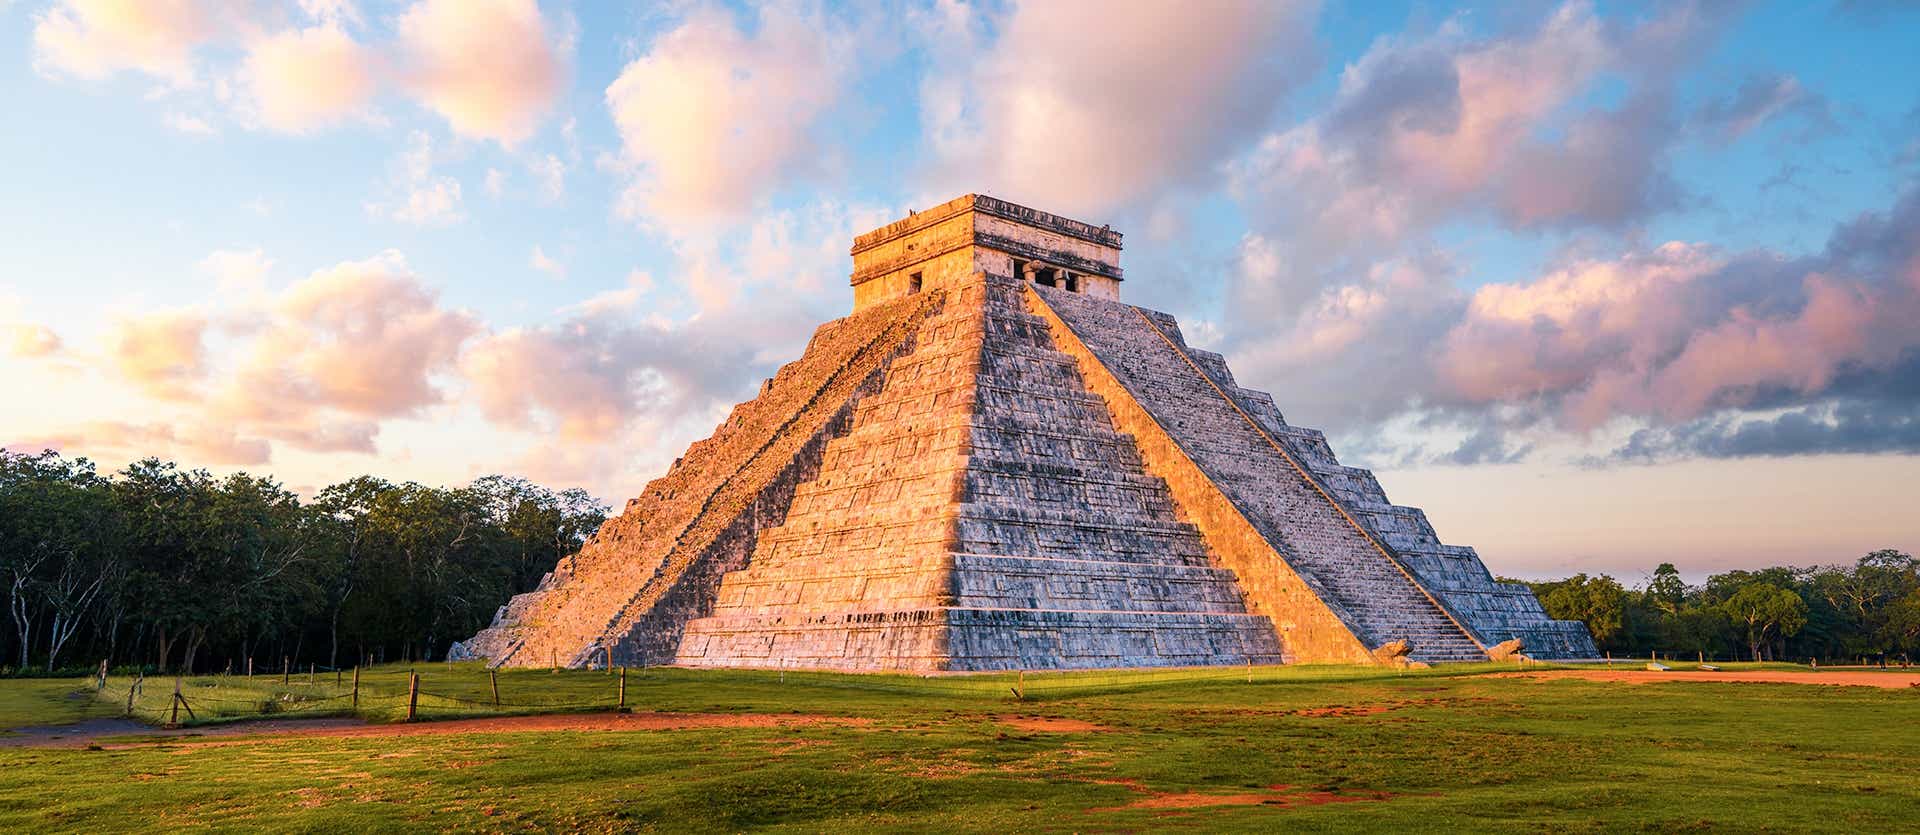 Templo de Kukulcán <span class="iconos separador"></span> Chichen Itzá